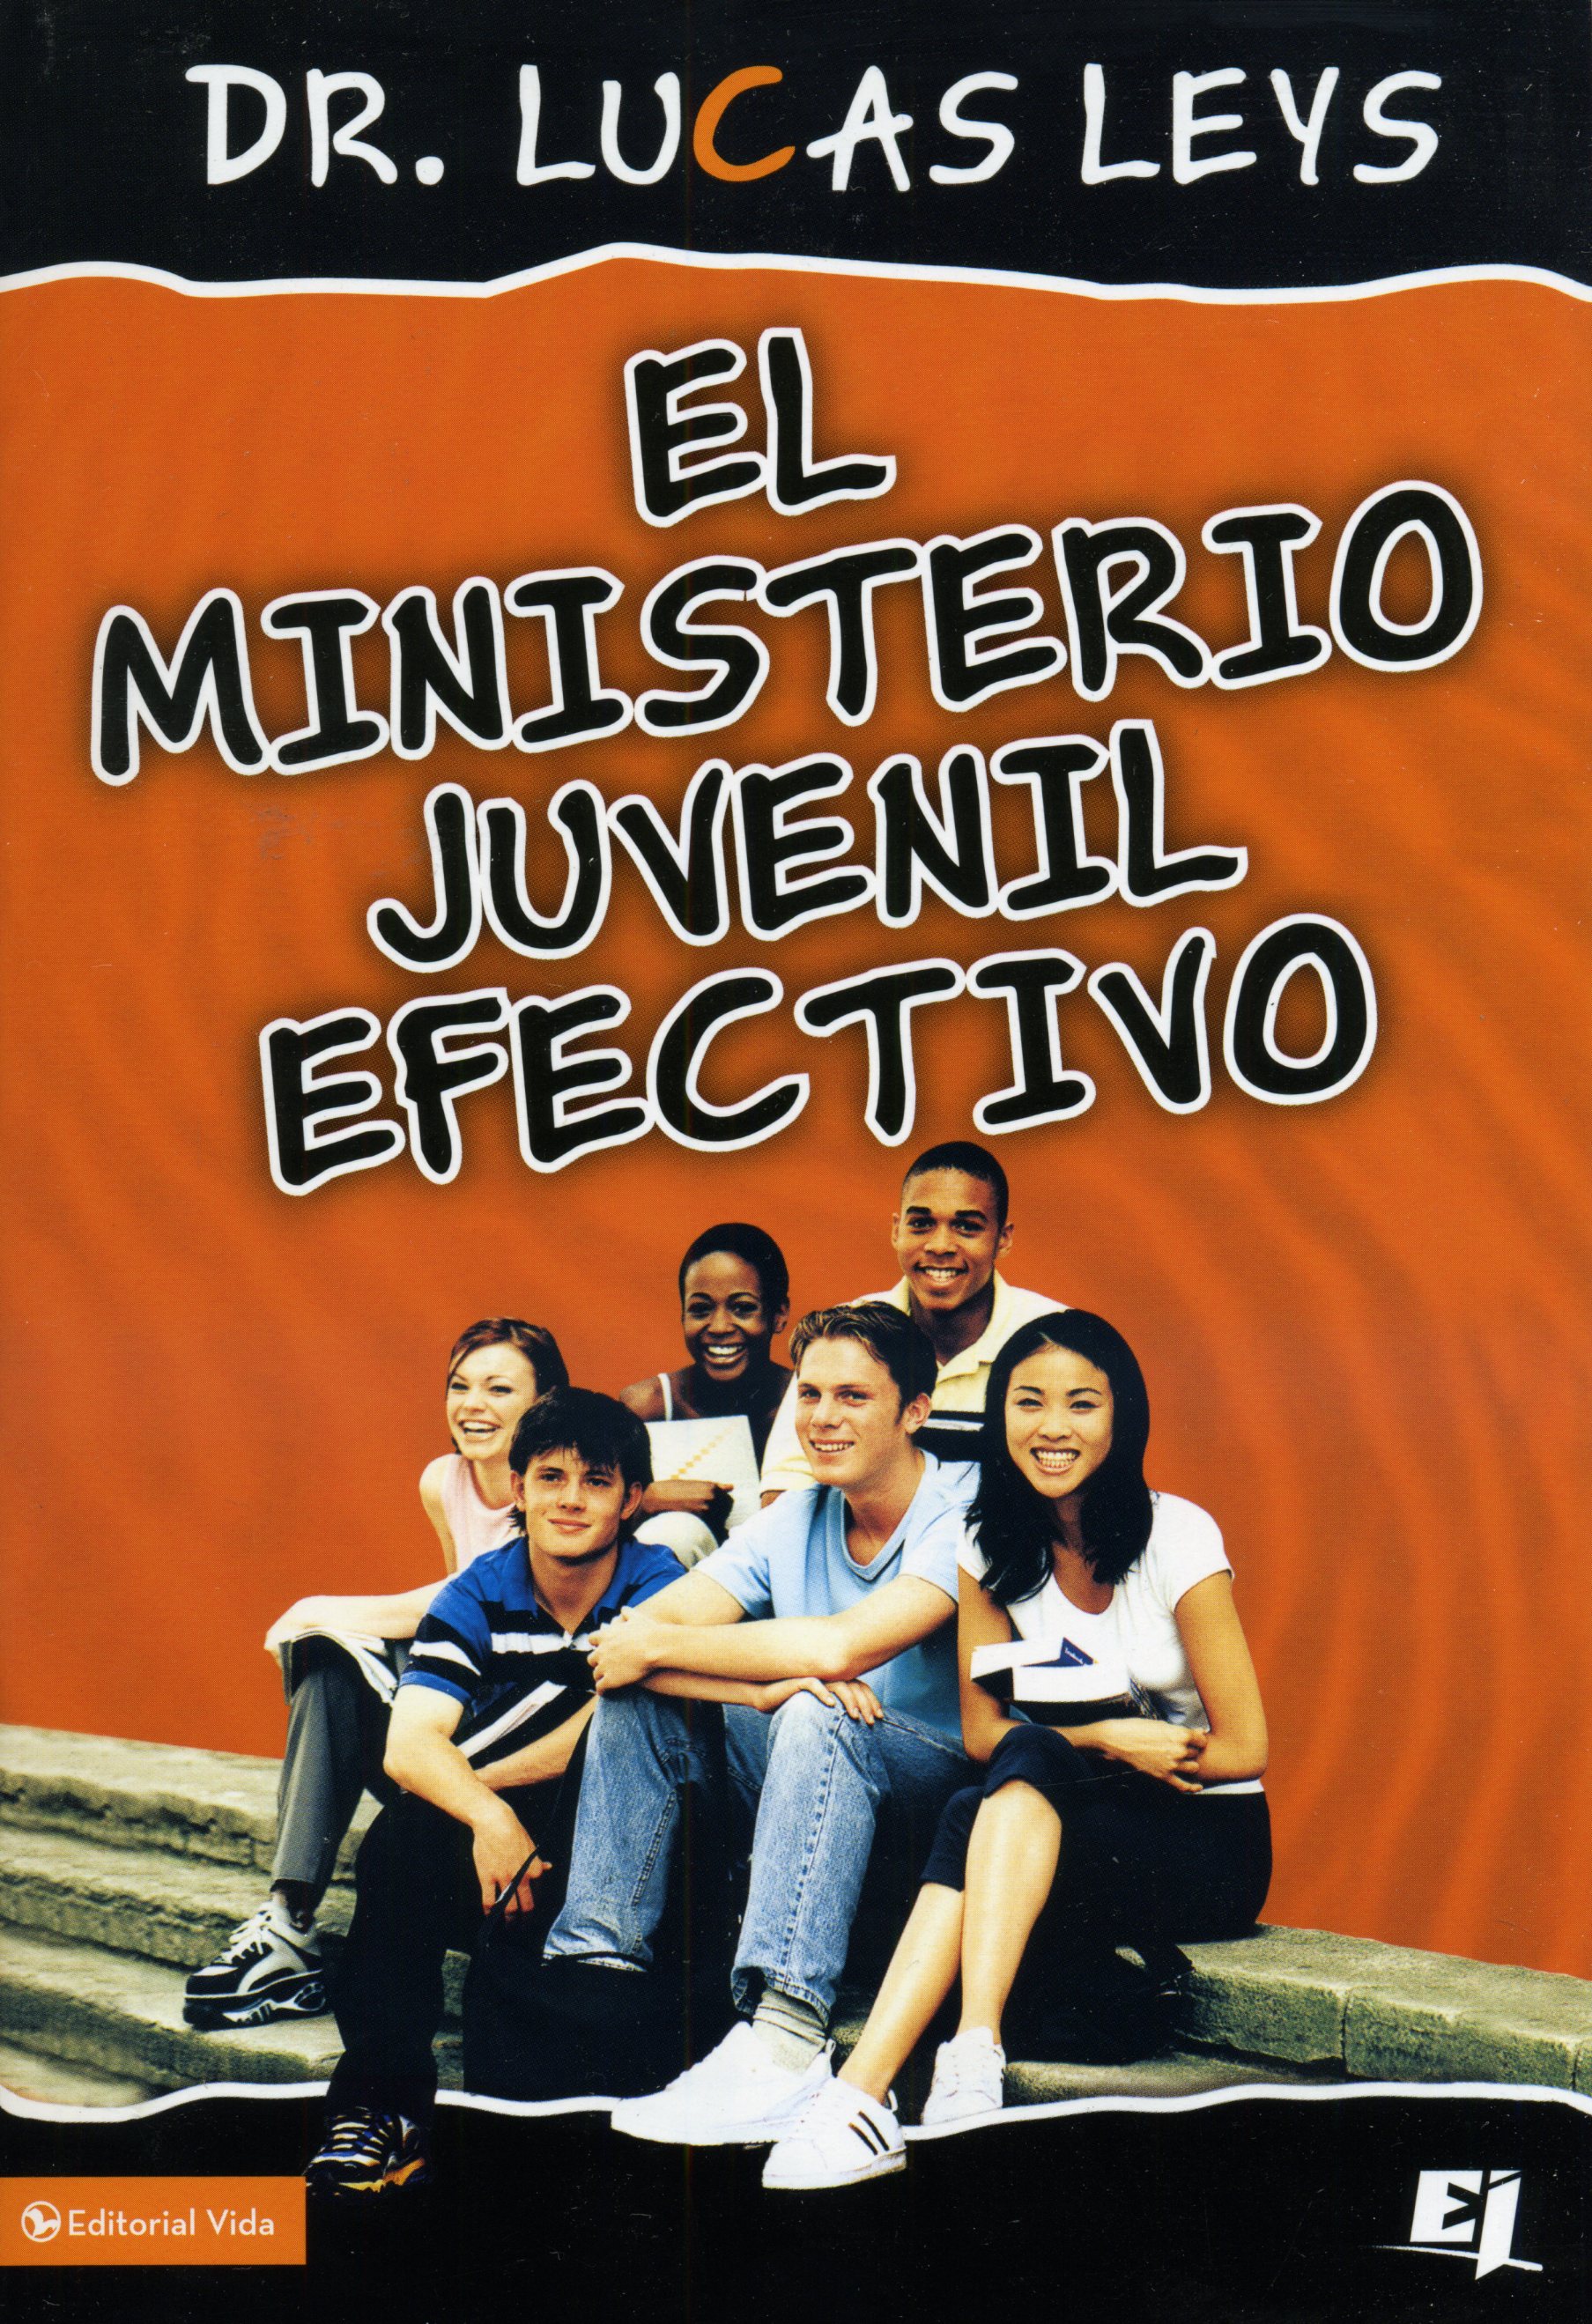 El ministerio juvenil efectivo